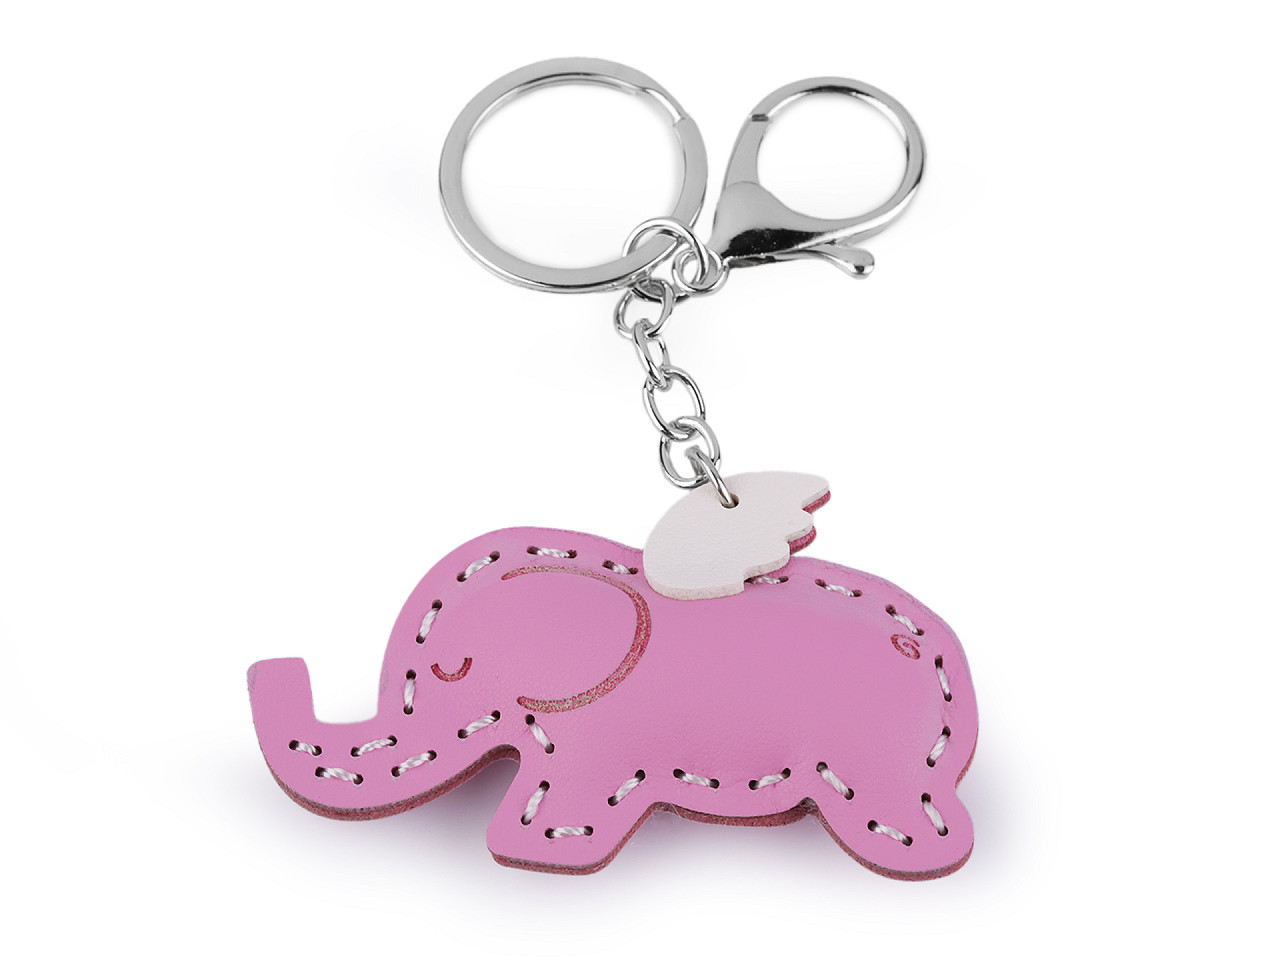 Přívěsek na batoh / klíče jednorožec, slon, barva 5 růžová dětská slon